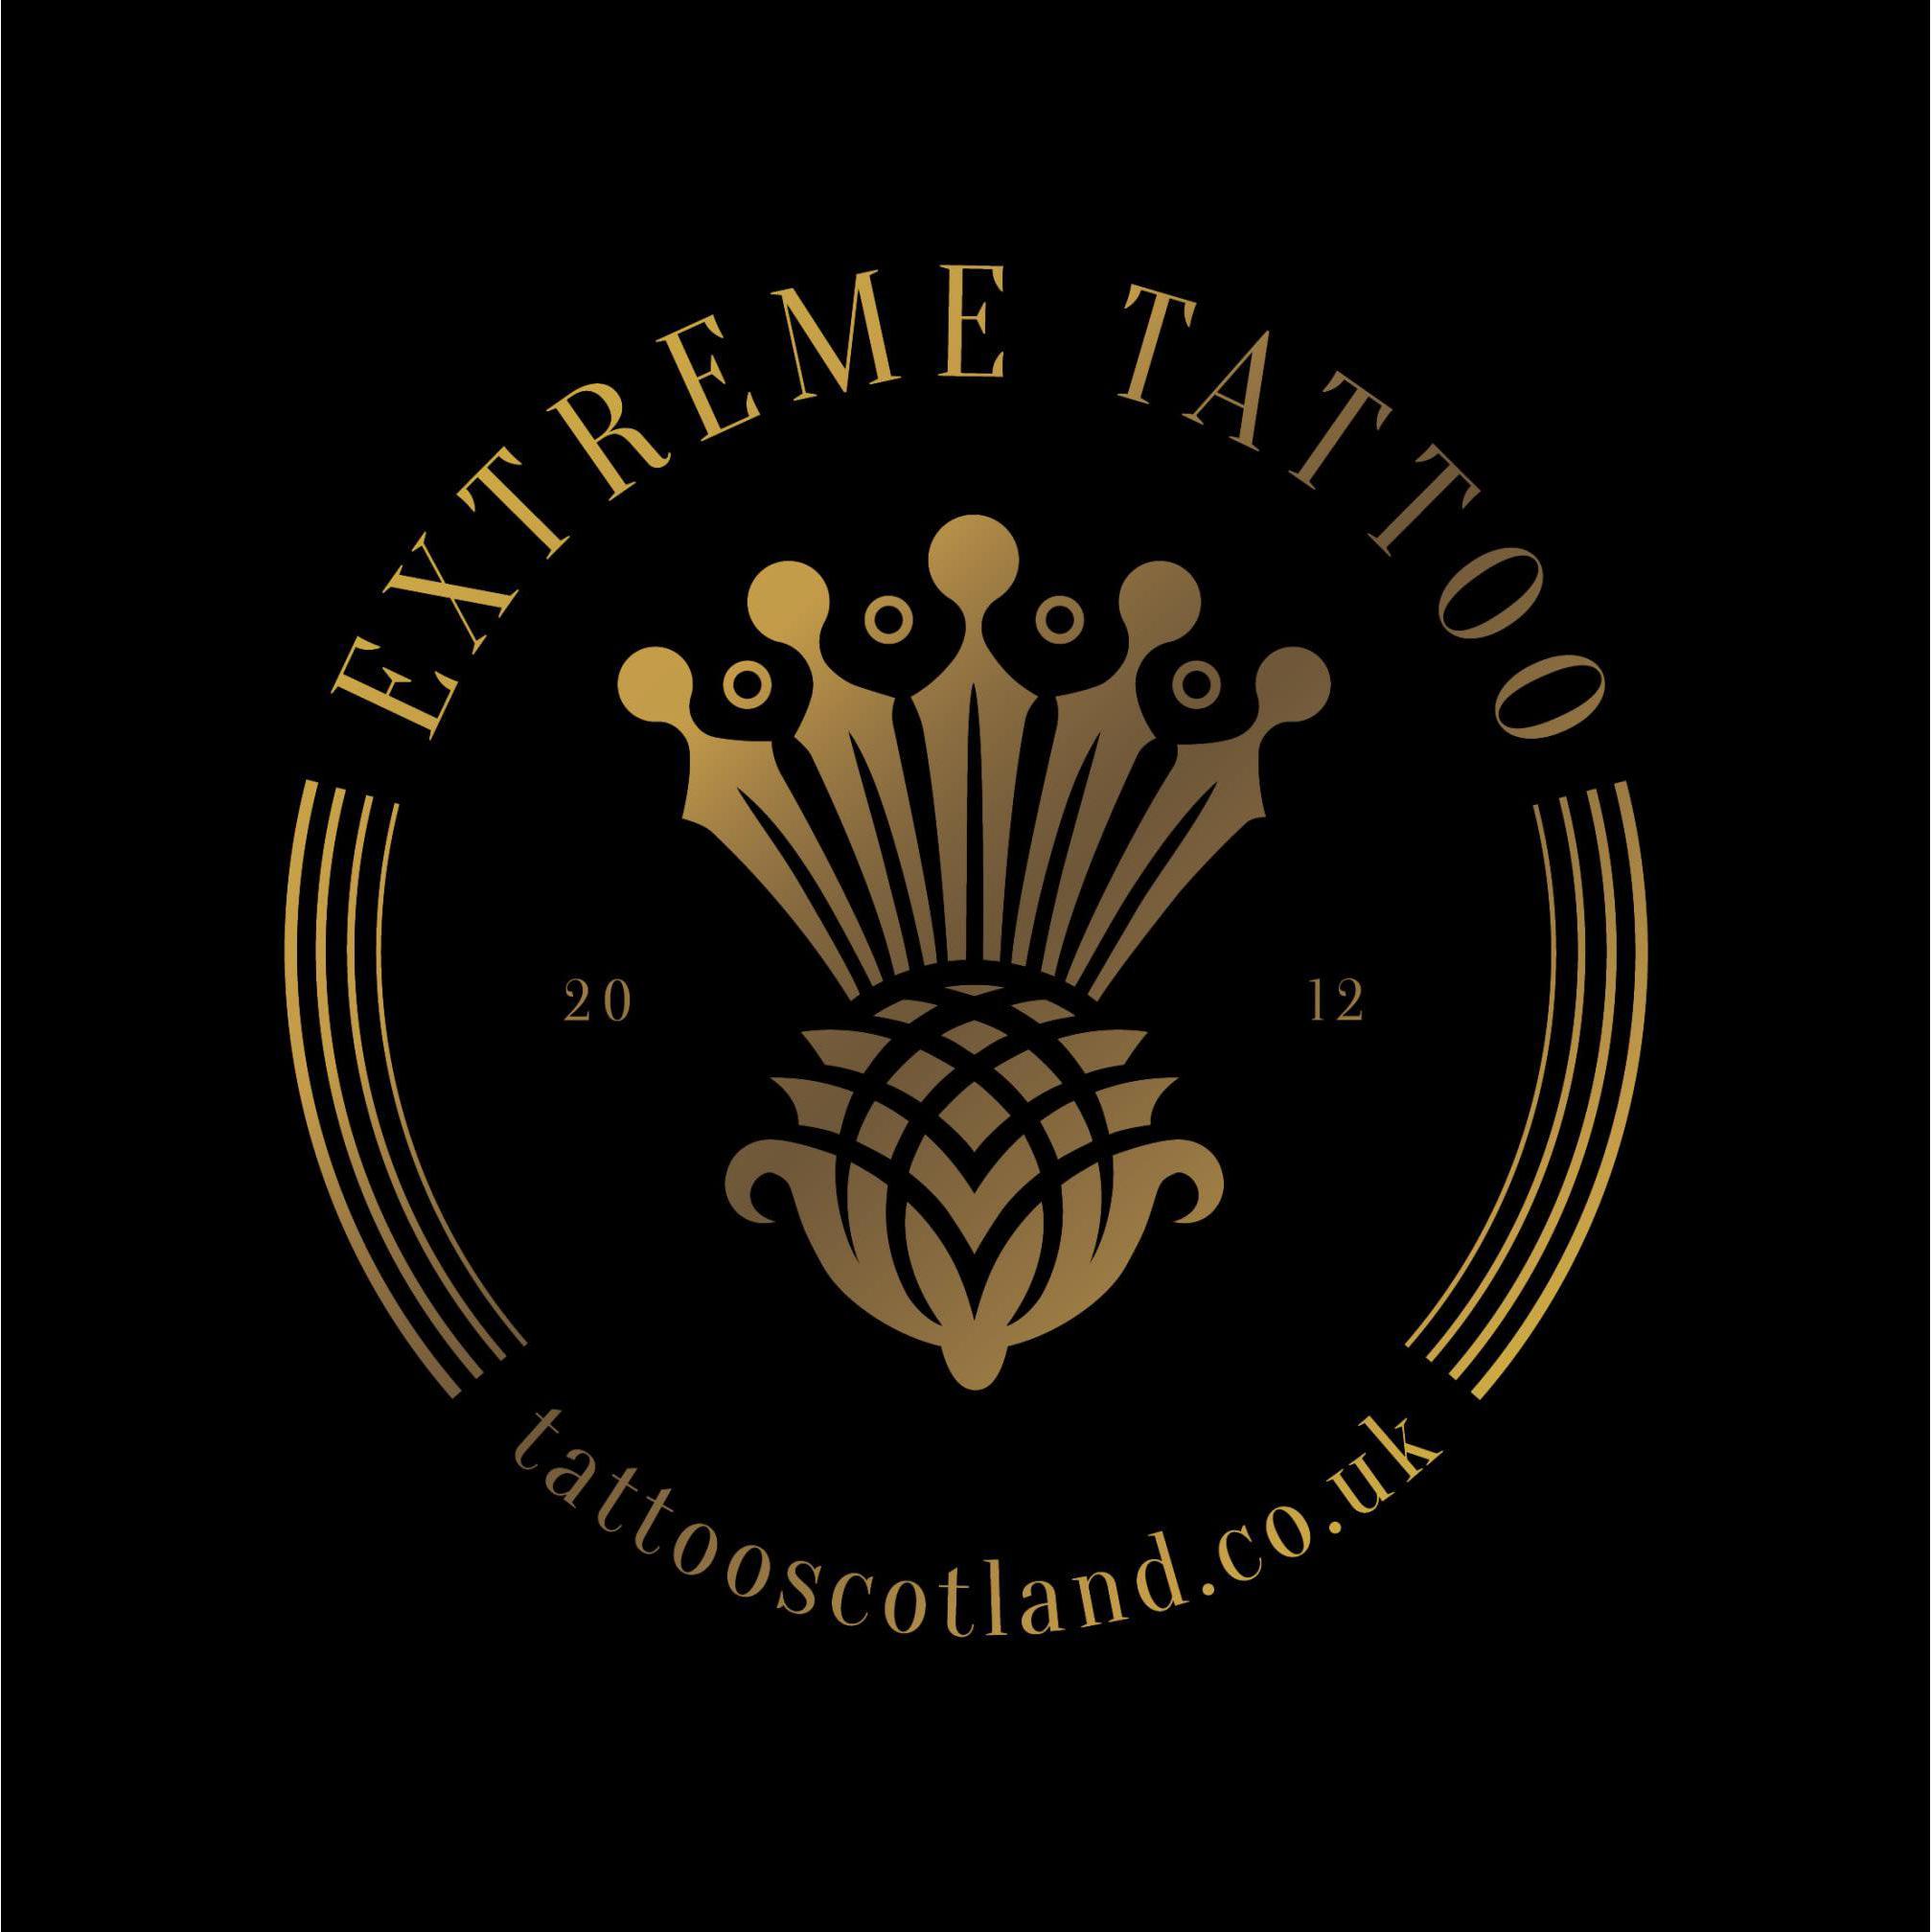 Extreme Tattoo - Inverness, Inverness-Shire IV3 5DA - 01463 832117 | ShowMeLocal.com